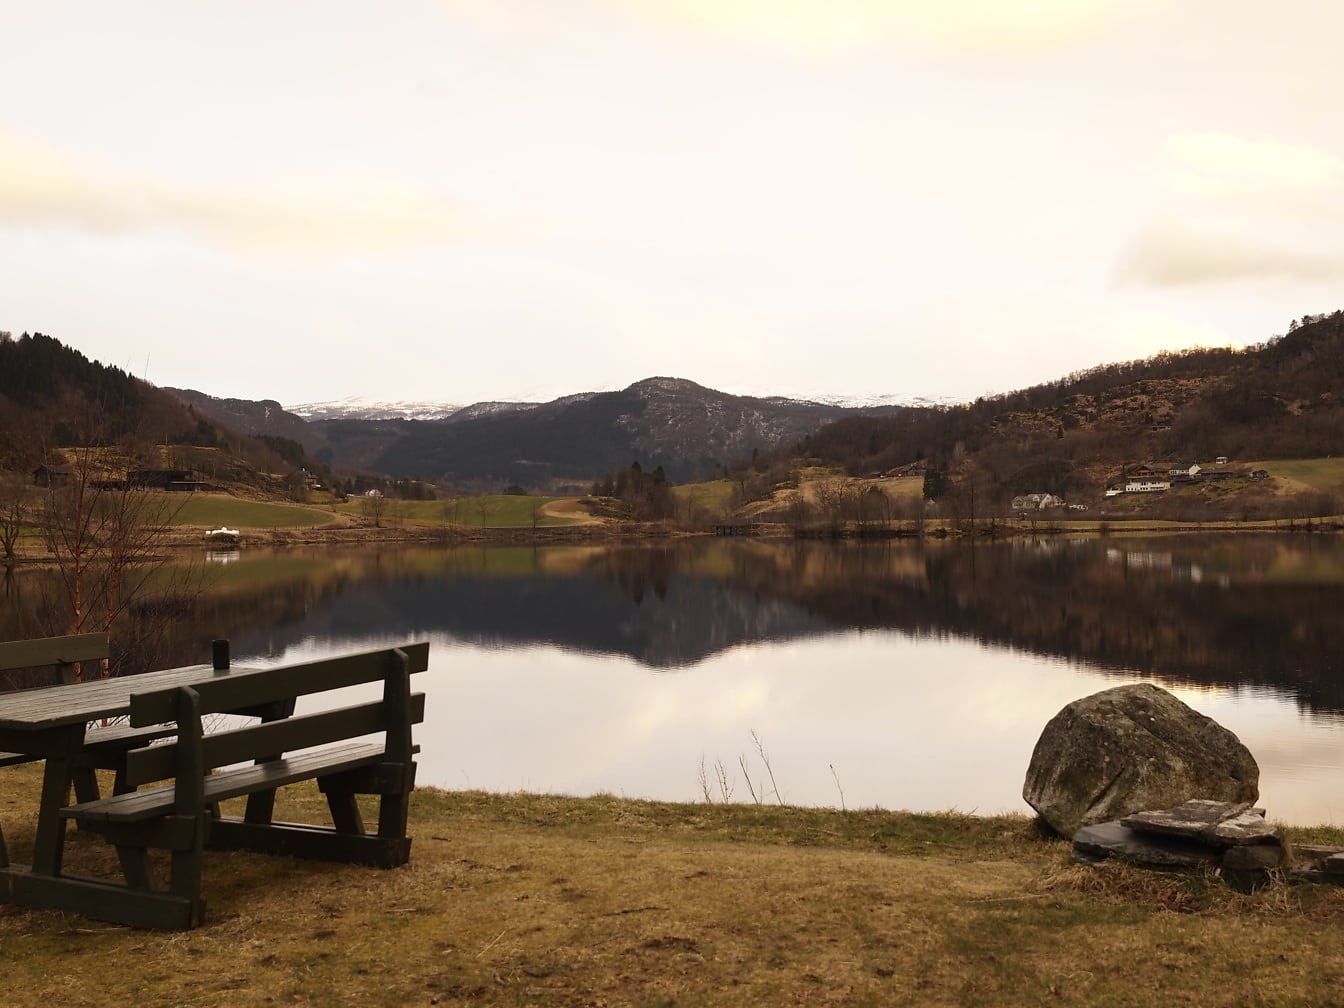 Khu vực nghỉ ngơi tại hồ với băng ghế gỗ màu xanh đậm